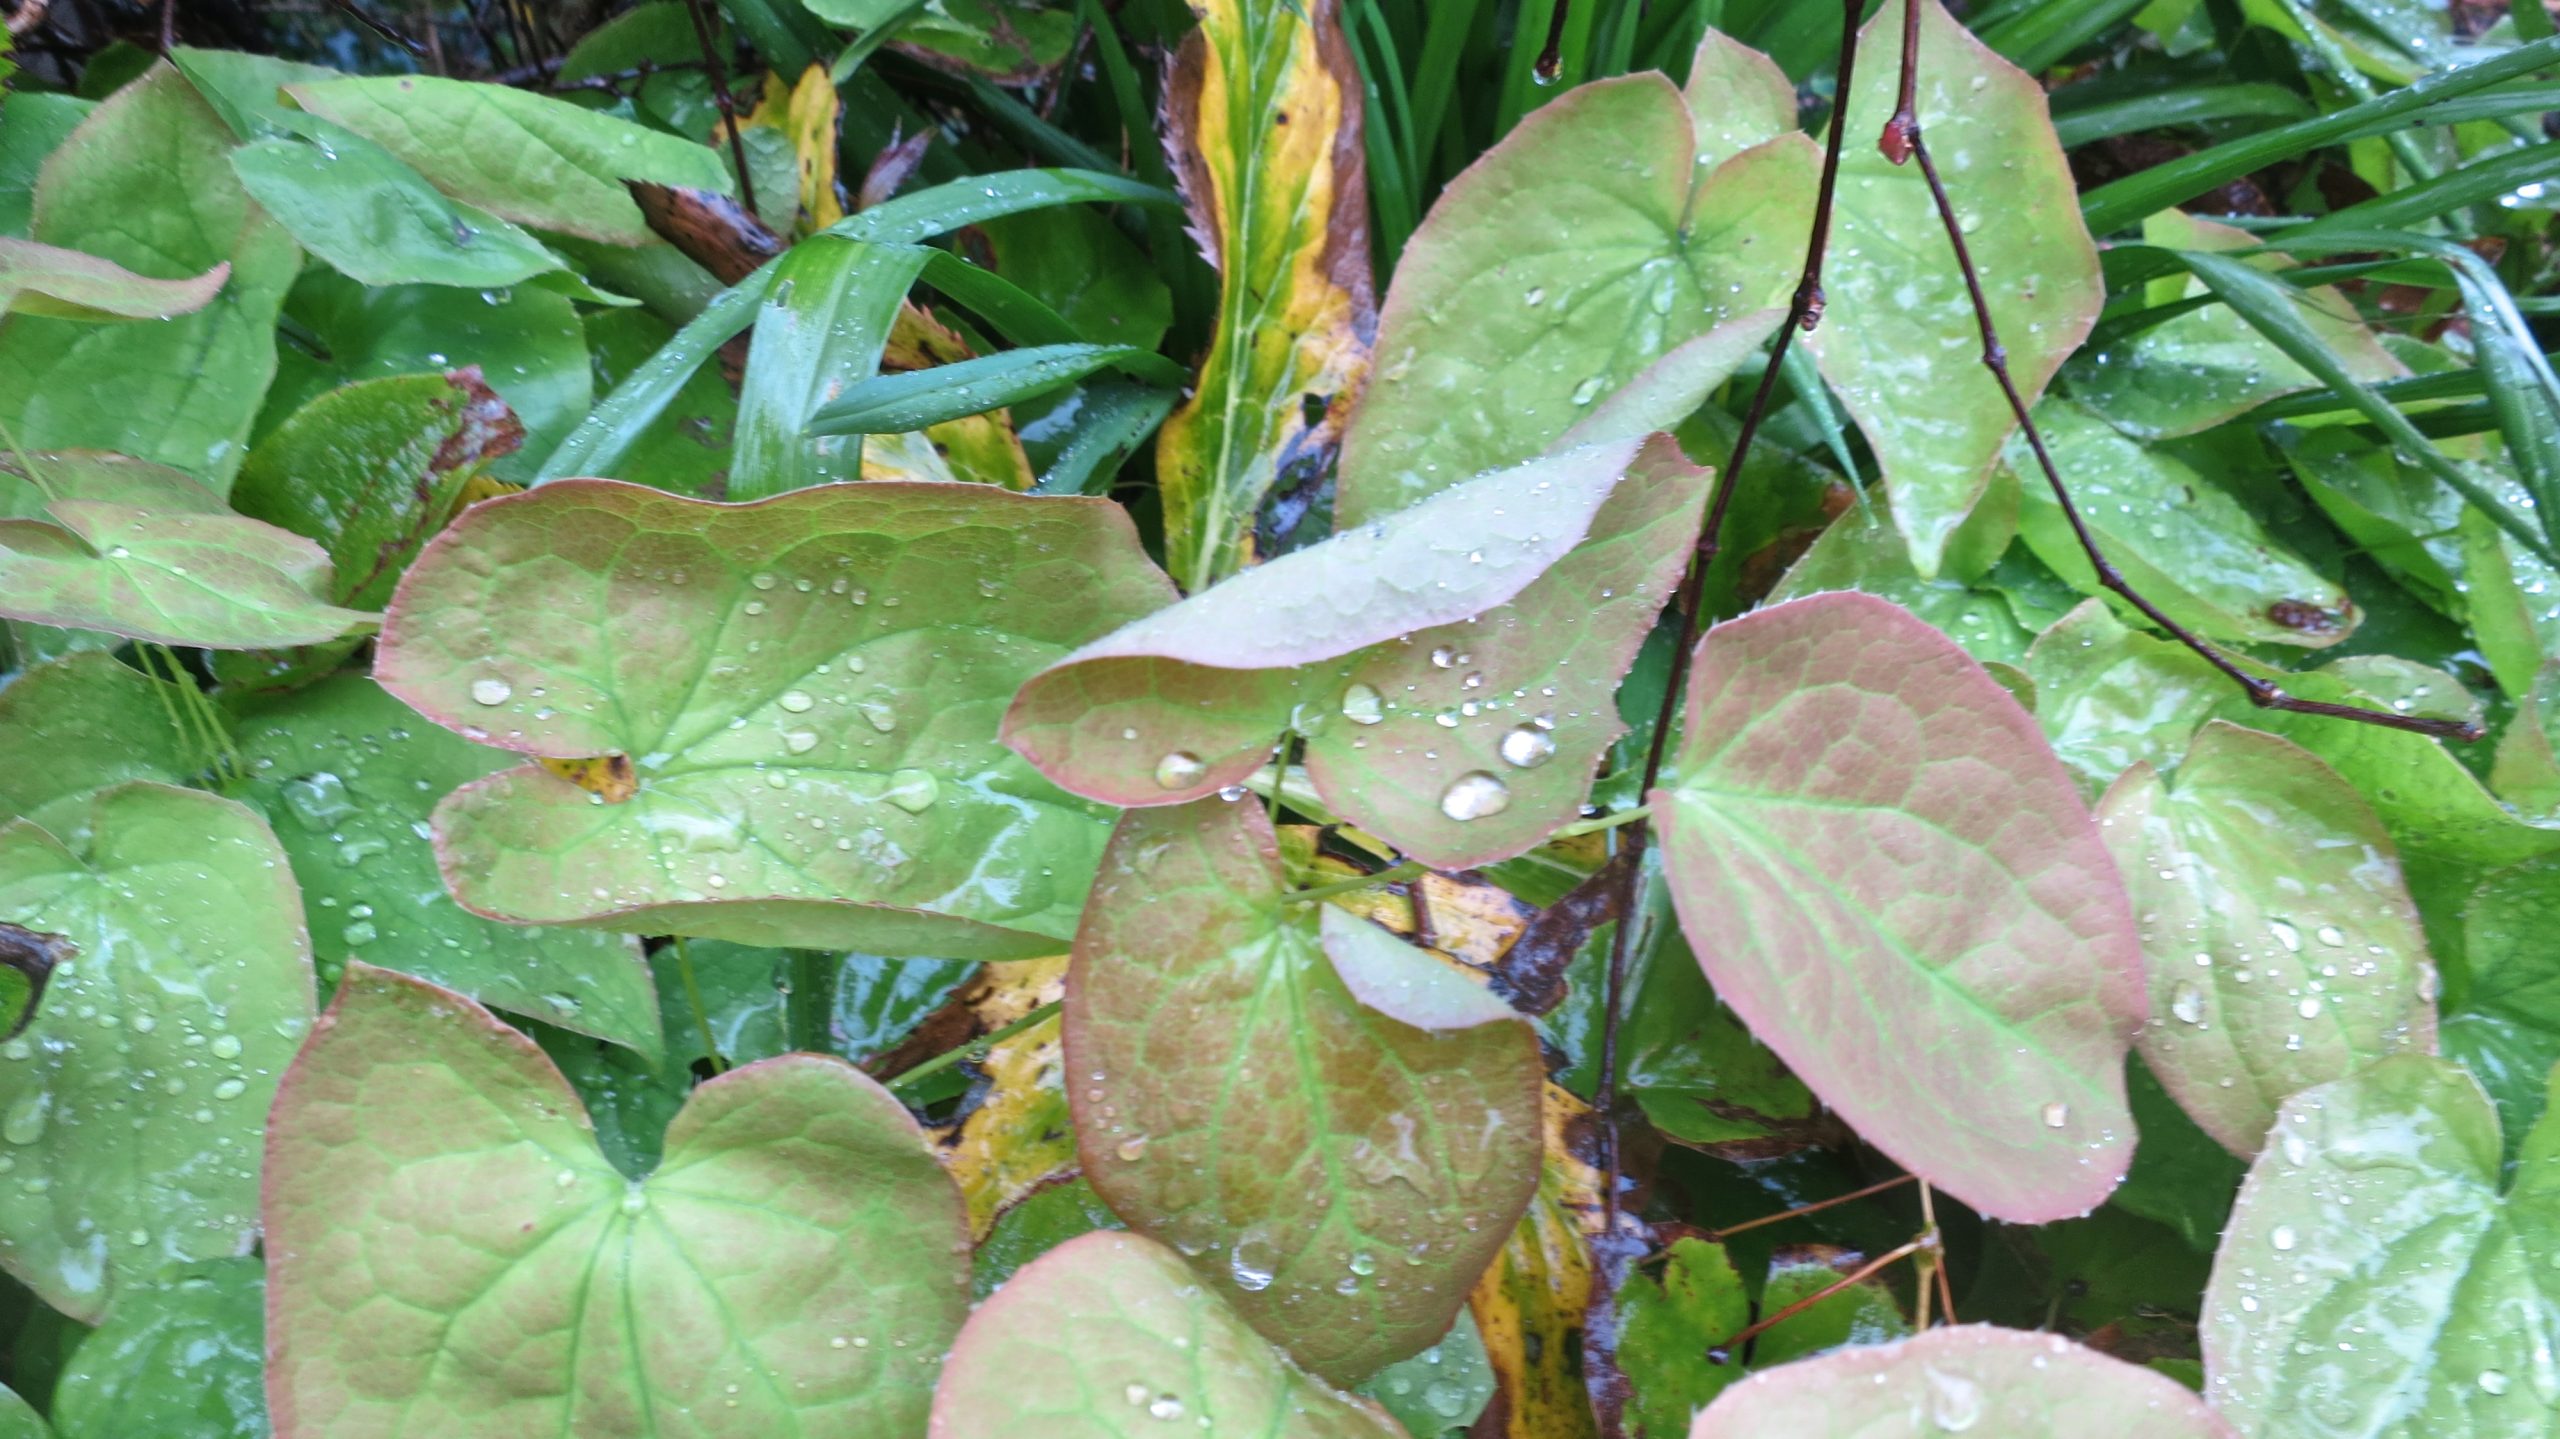 Raindrops on epimedium leaves